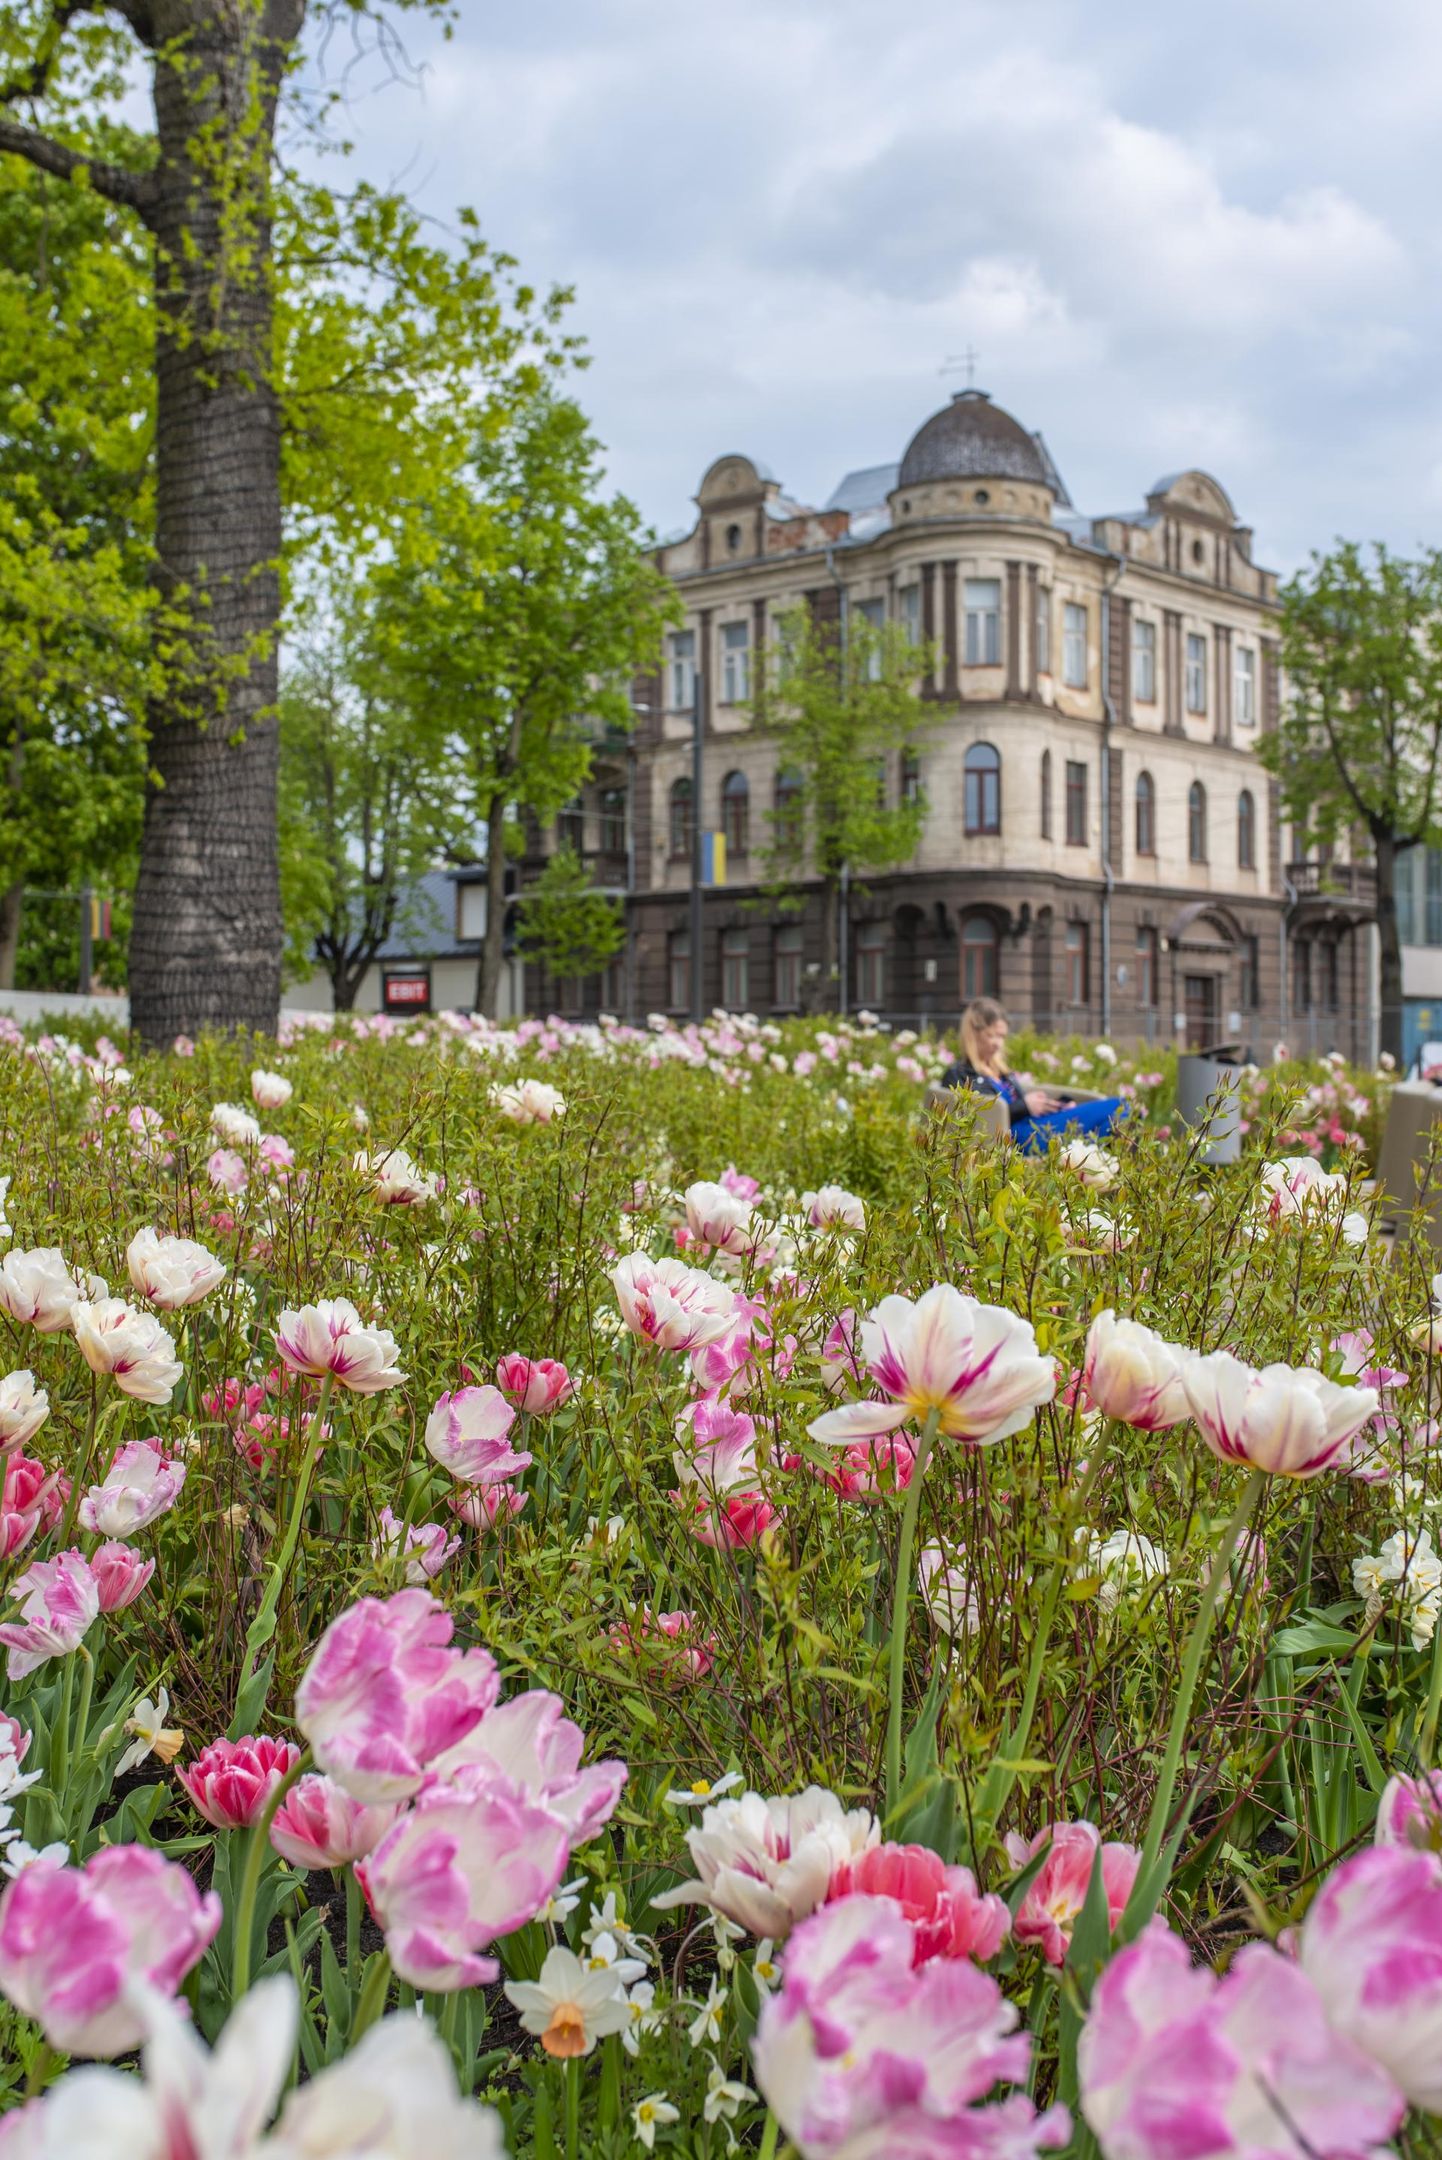 Kaunase elu keerleb lillede ümber, nende järgi lõhnavad parfüümid, seebid, kaardimängud ja üldse kogu linn.

FOTO: Silvia Pärmann